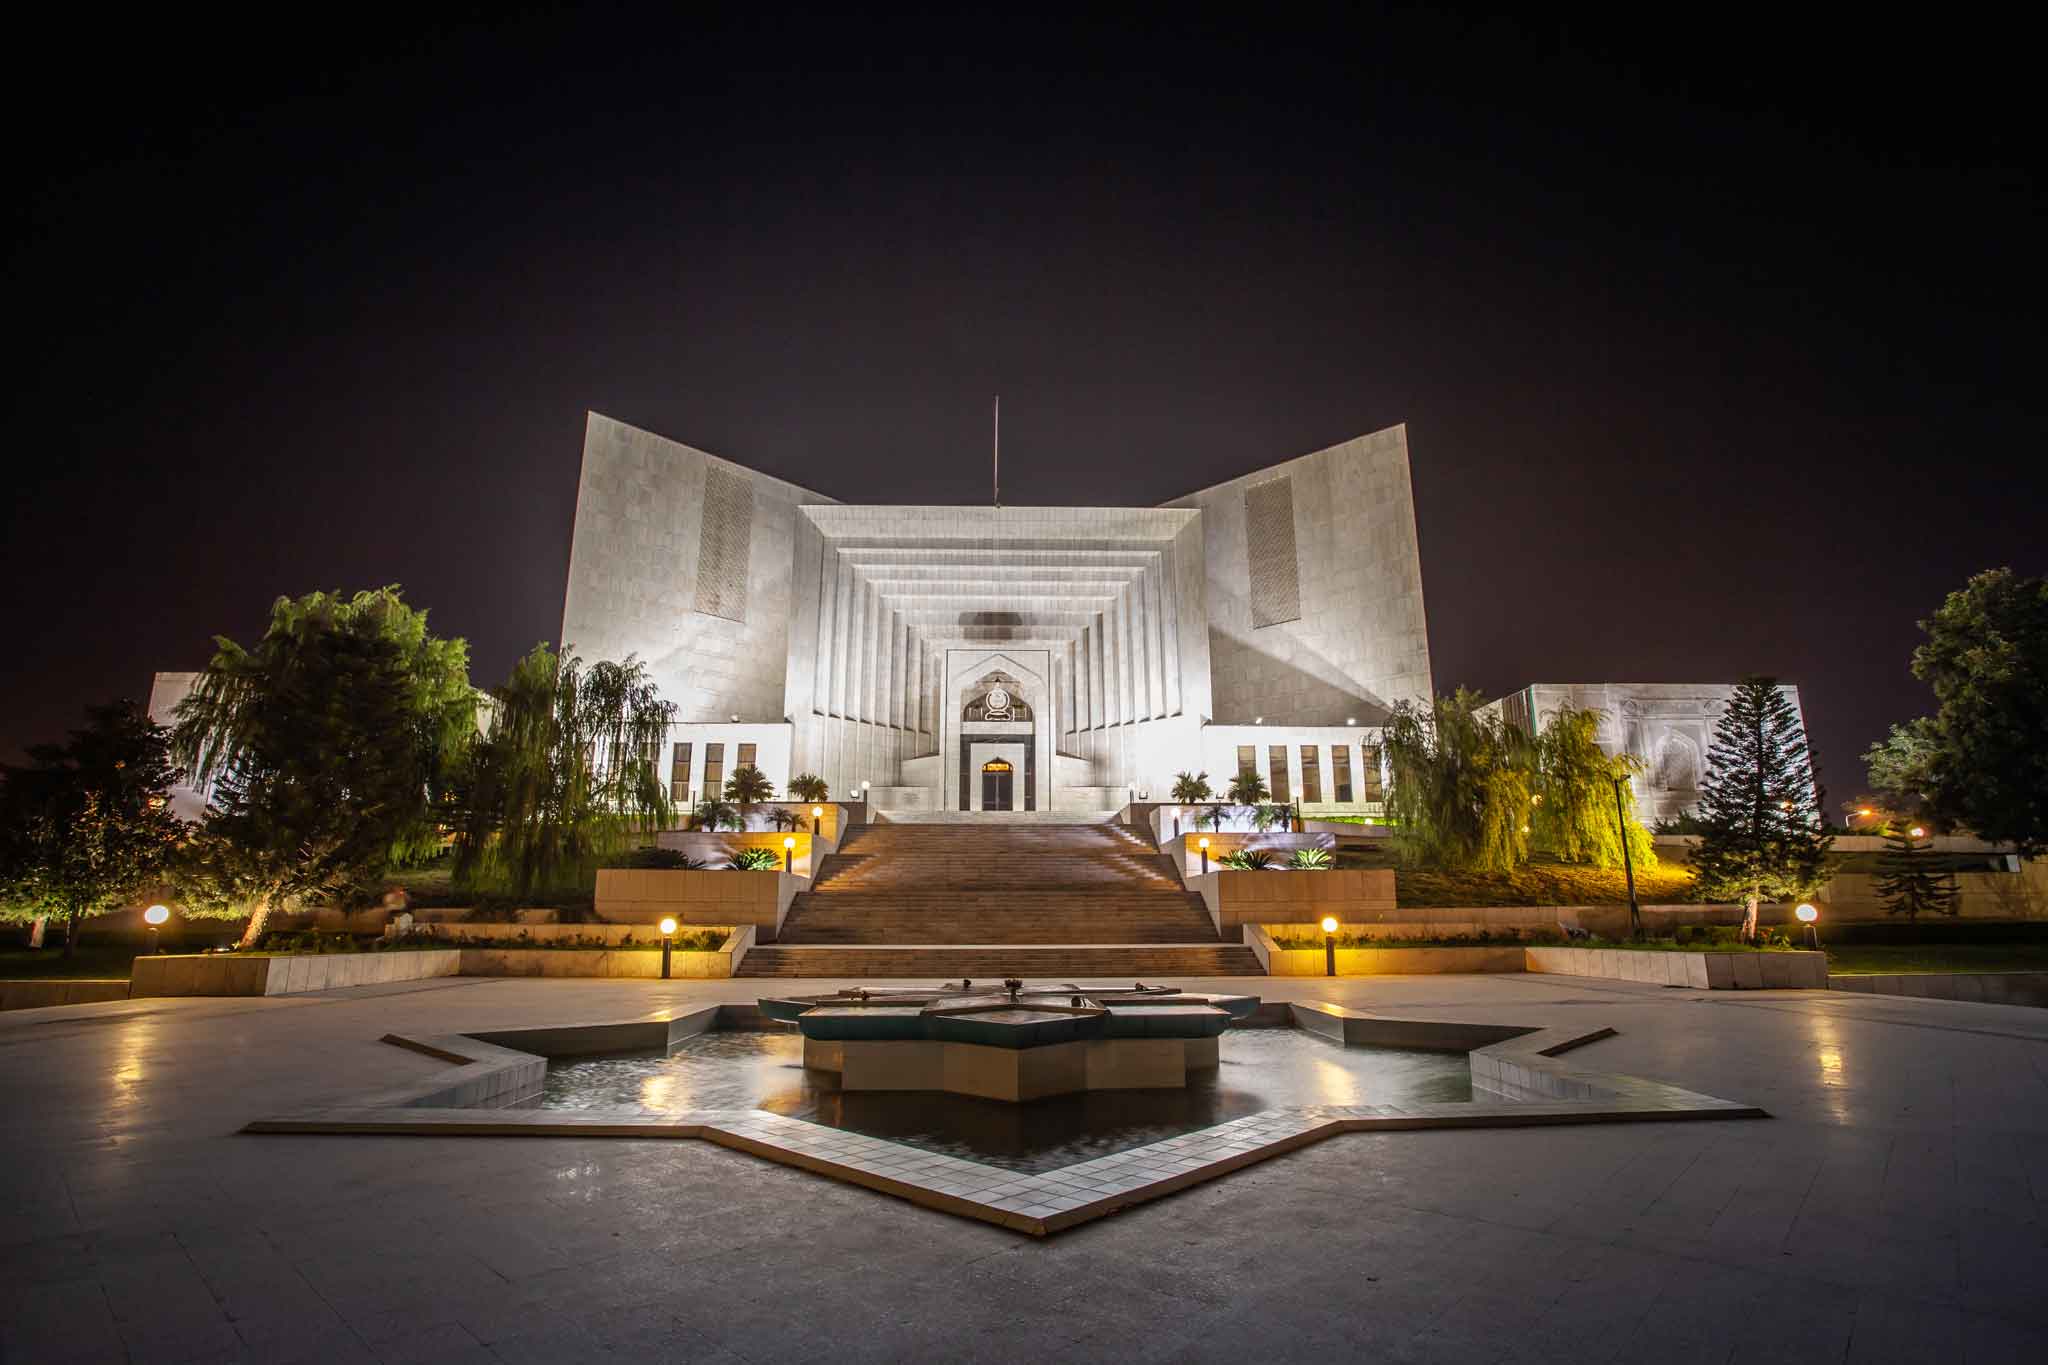 Pakistan's Supreme Court Ends Lifelong Disqualification of Politicians